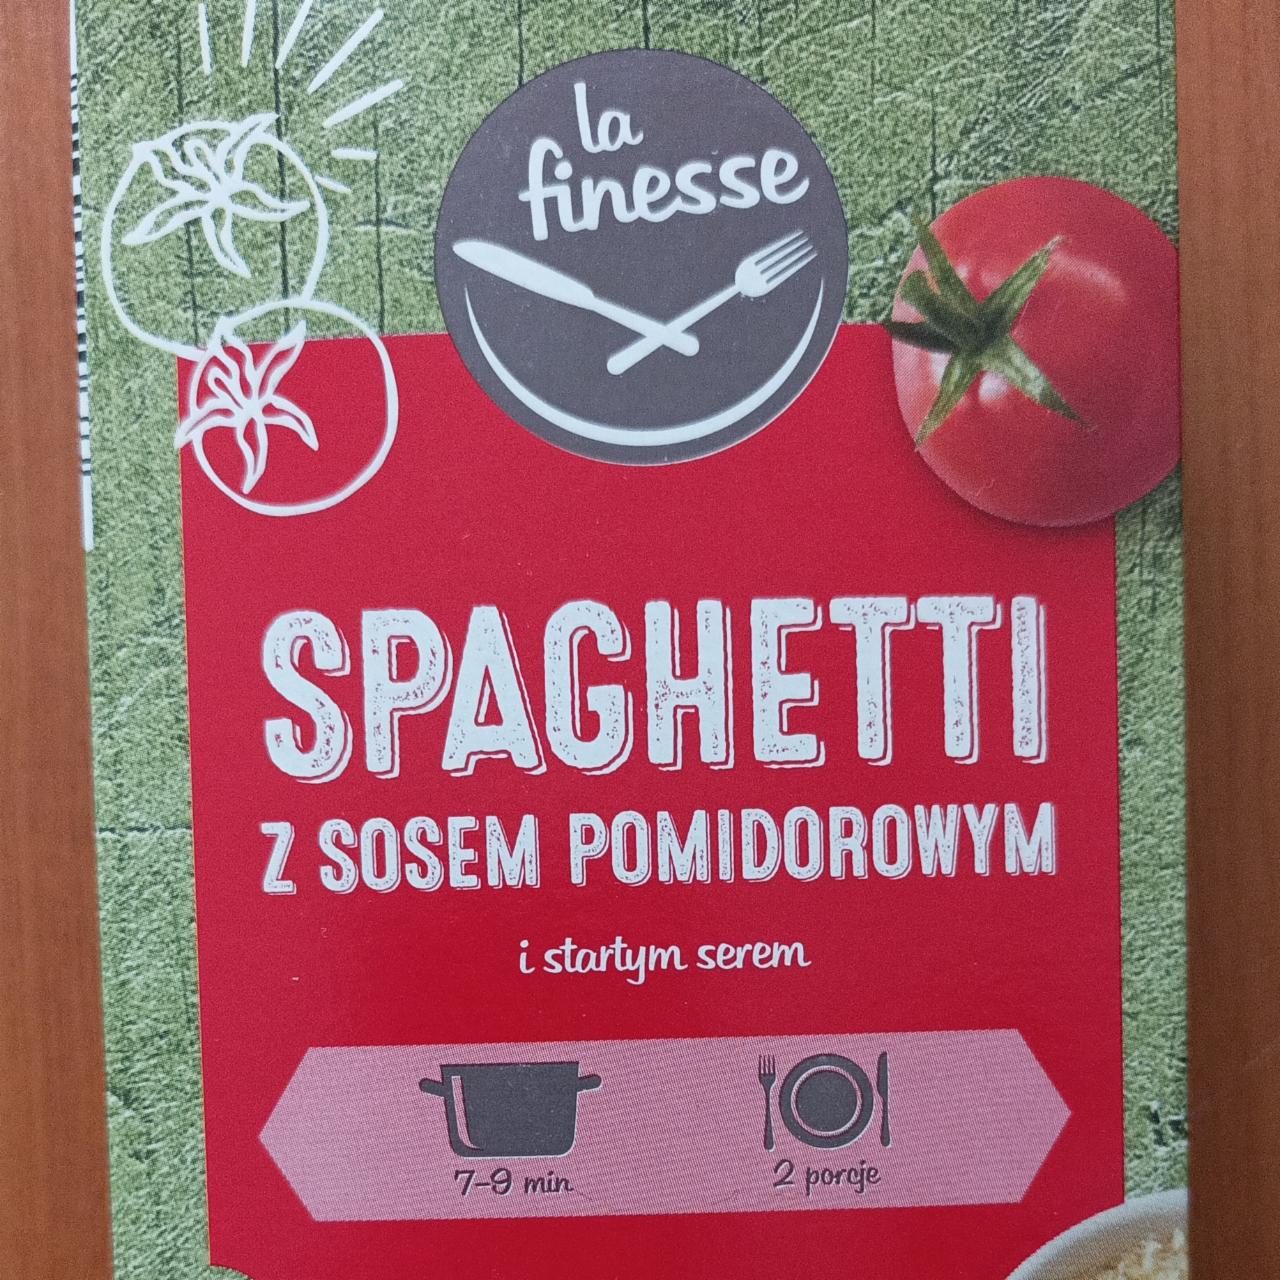 Zdjęcia - Spaghetti z sosem pomidorowym i startym serem La Finesse